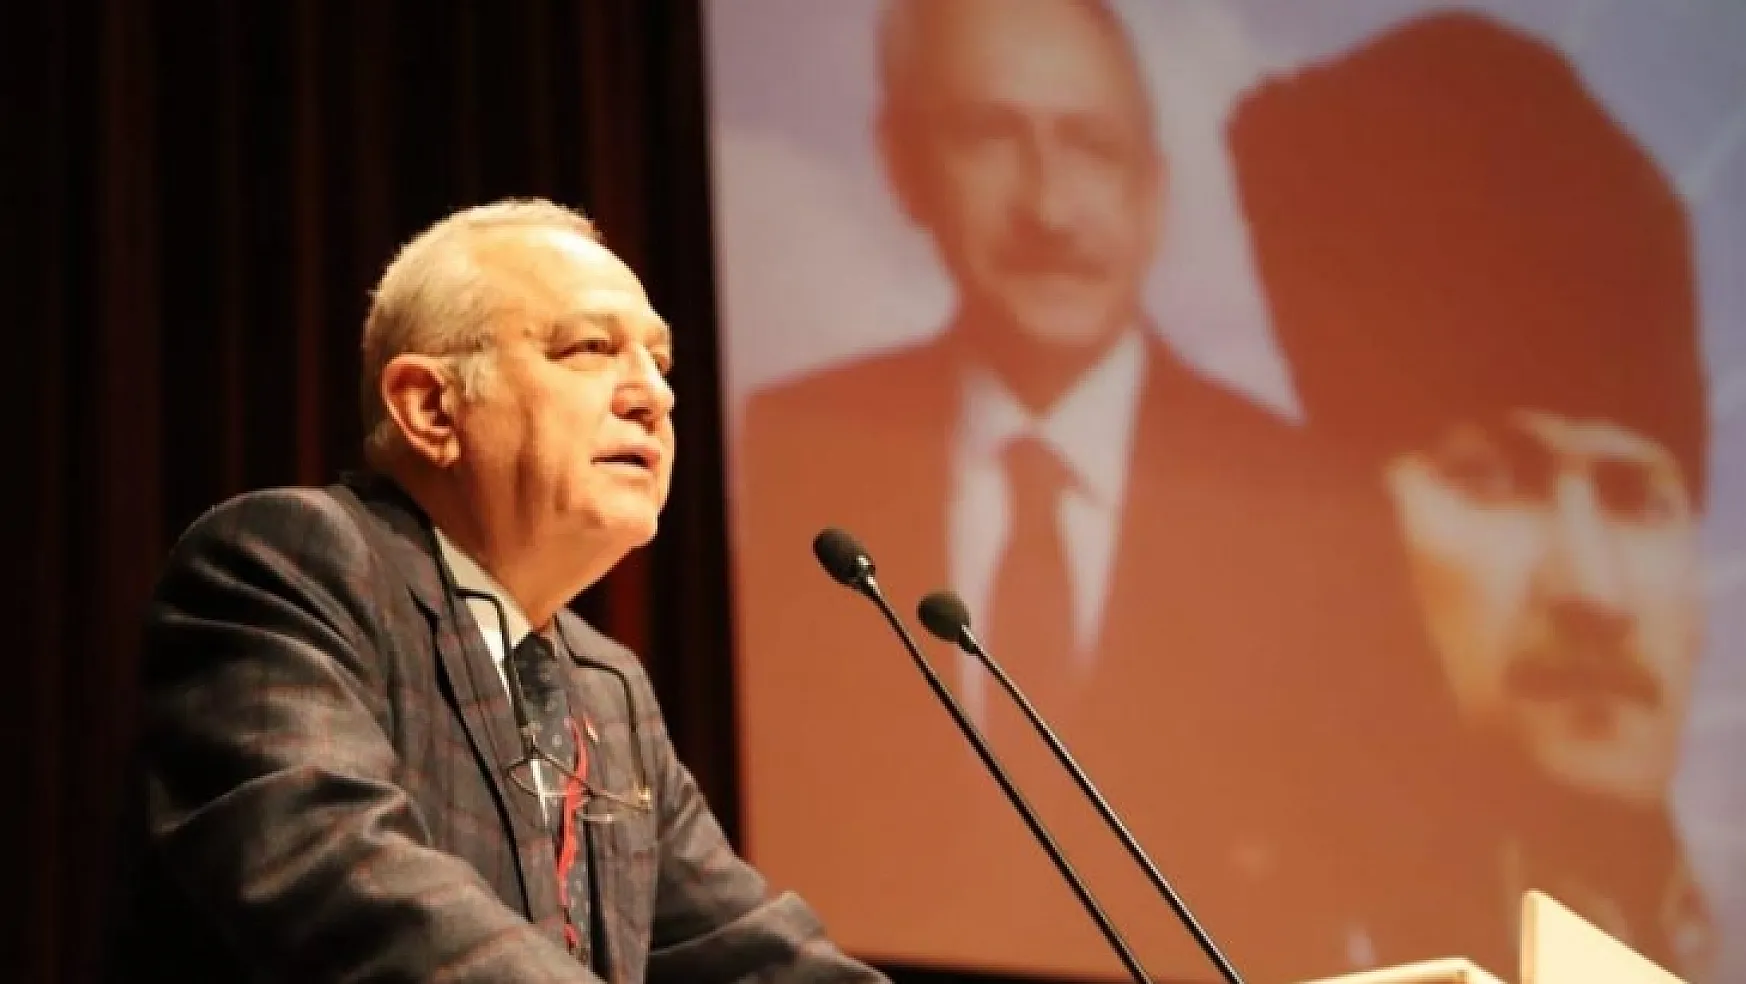 CHP Muğla İl Başkanı Adem Zeybekoğlu: 'İktidar tedbirleri arttırmalı, vatandaşın sağlığı ile daha fazla oynamamalıdır'